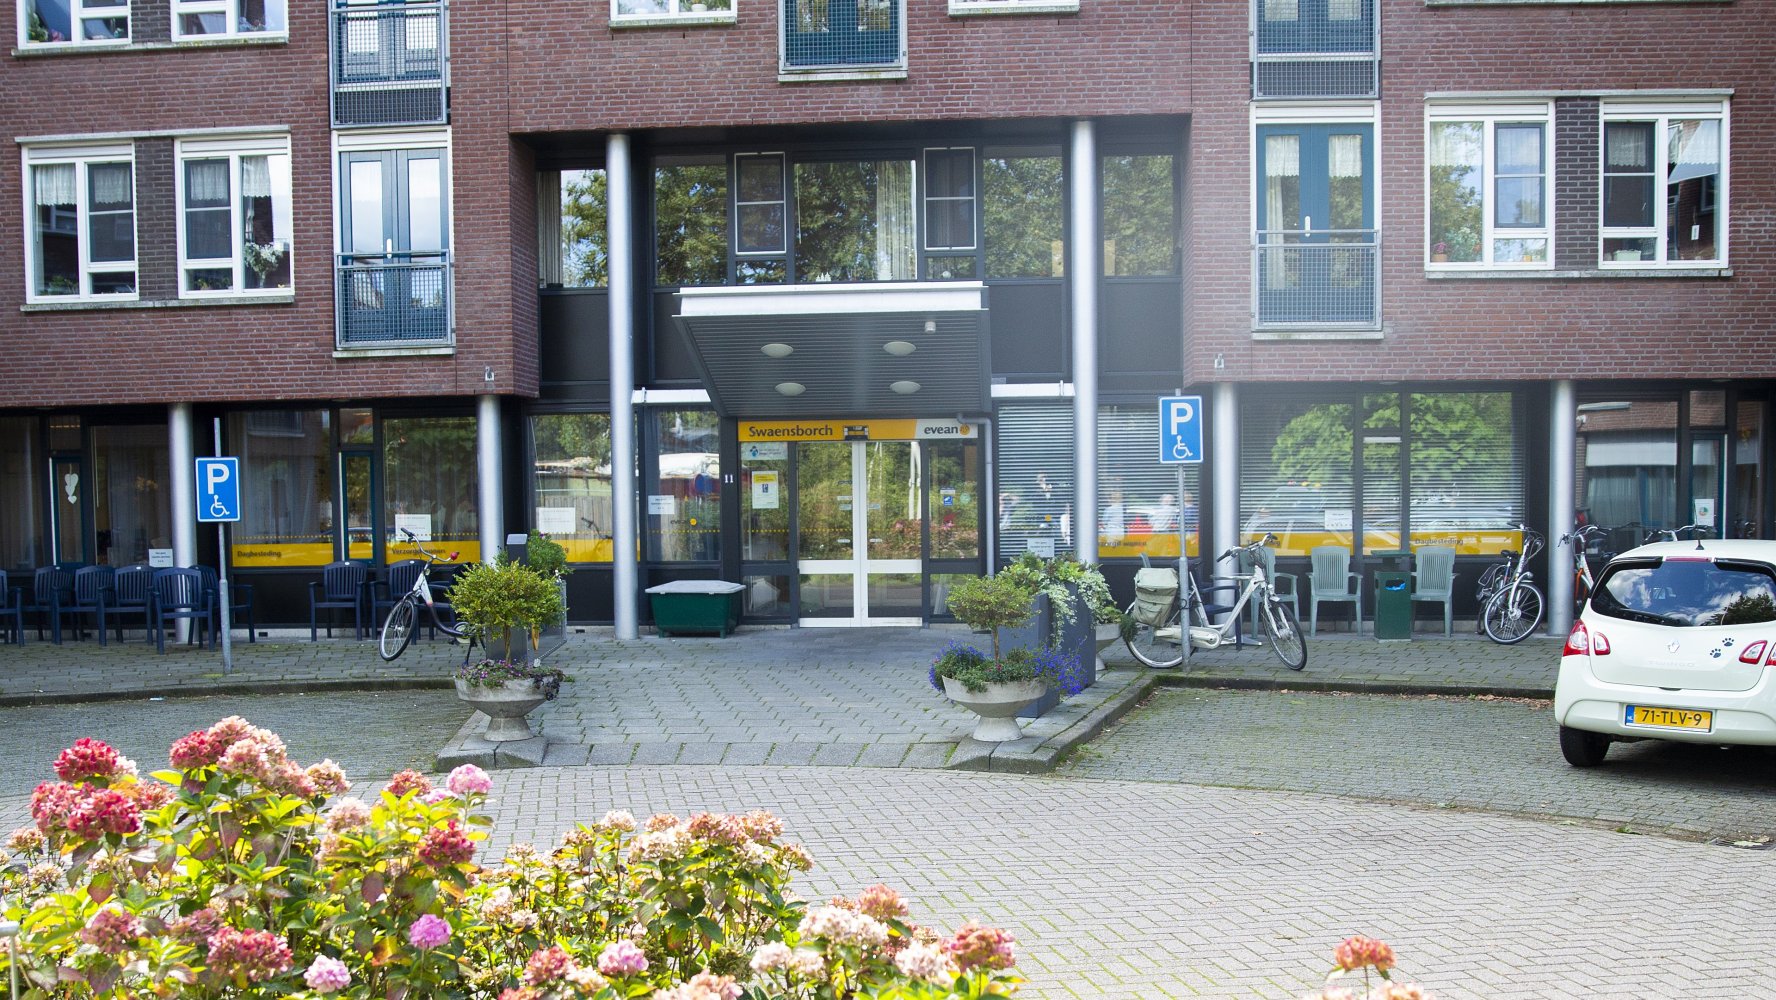 werkenbij Evean vacatures locatie Swaensborch Monnickendam